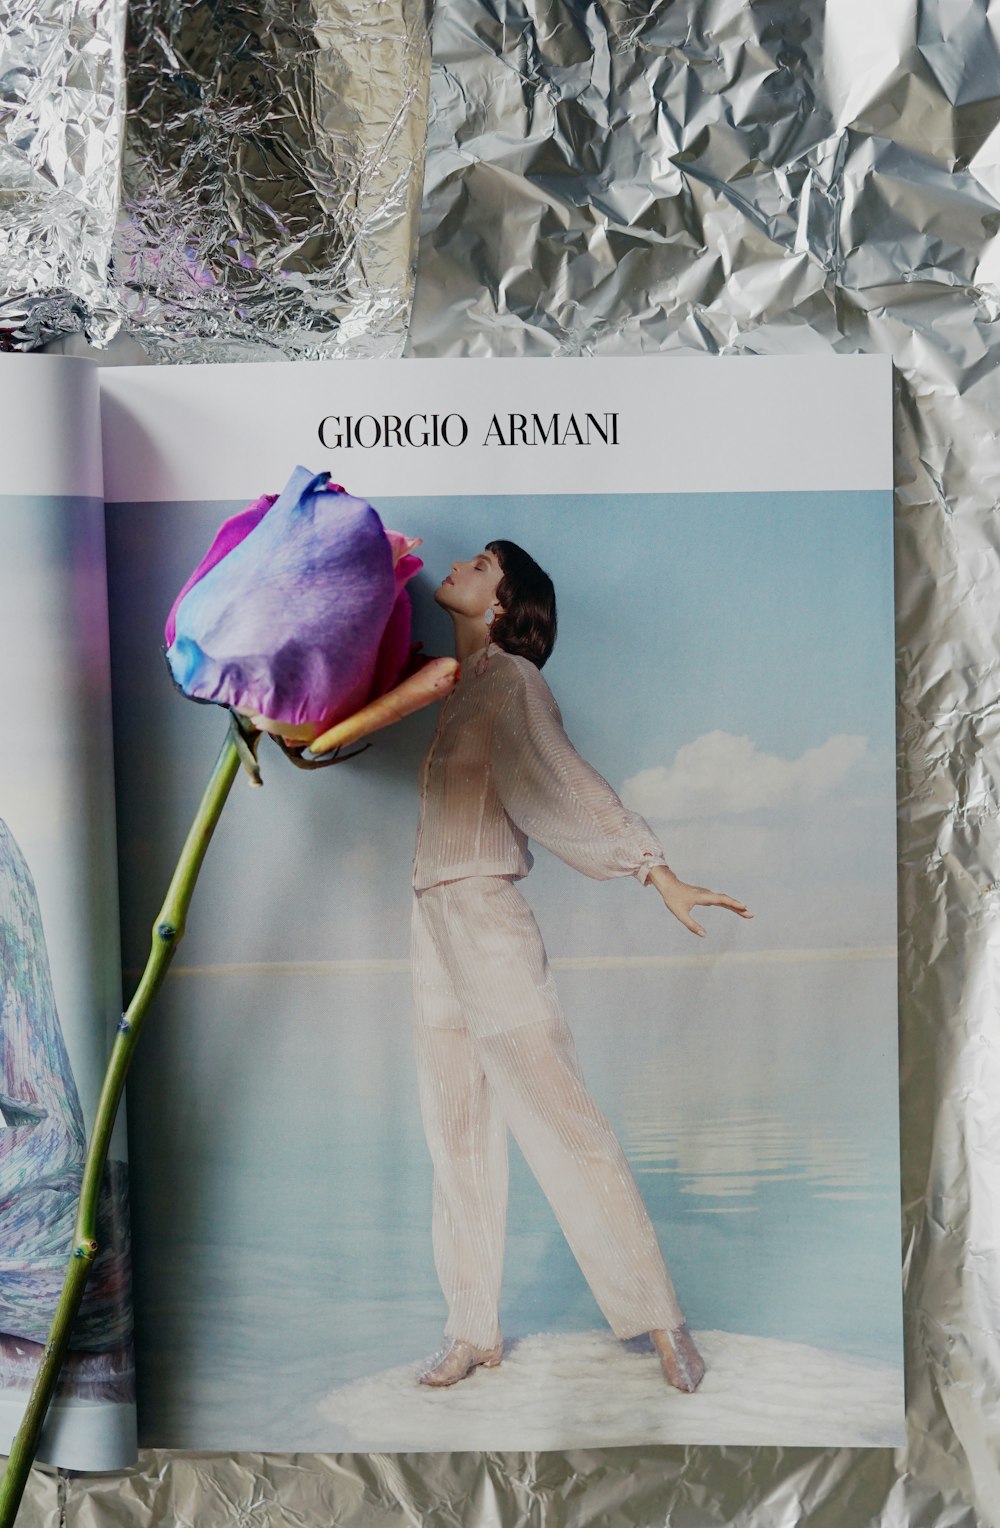 Giorgo Arman book with multi-colored rose